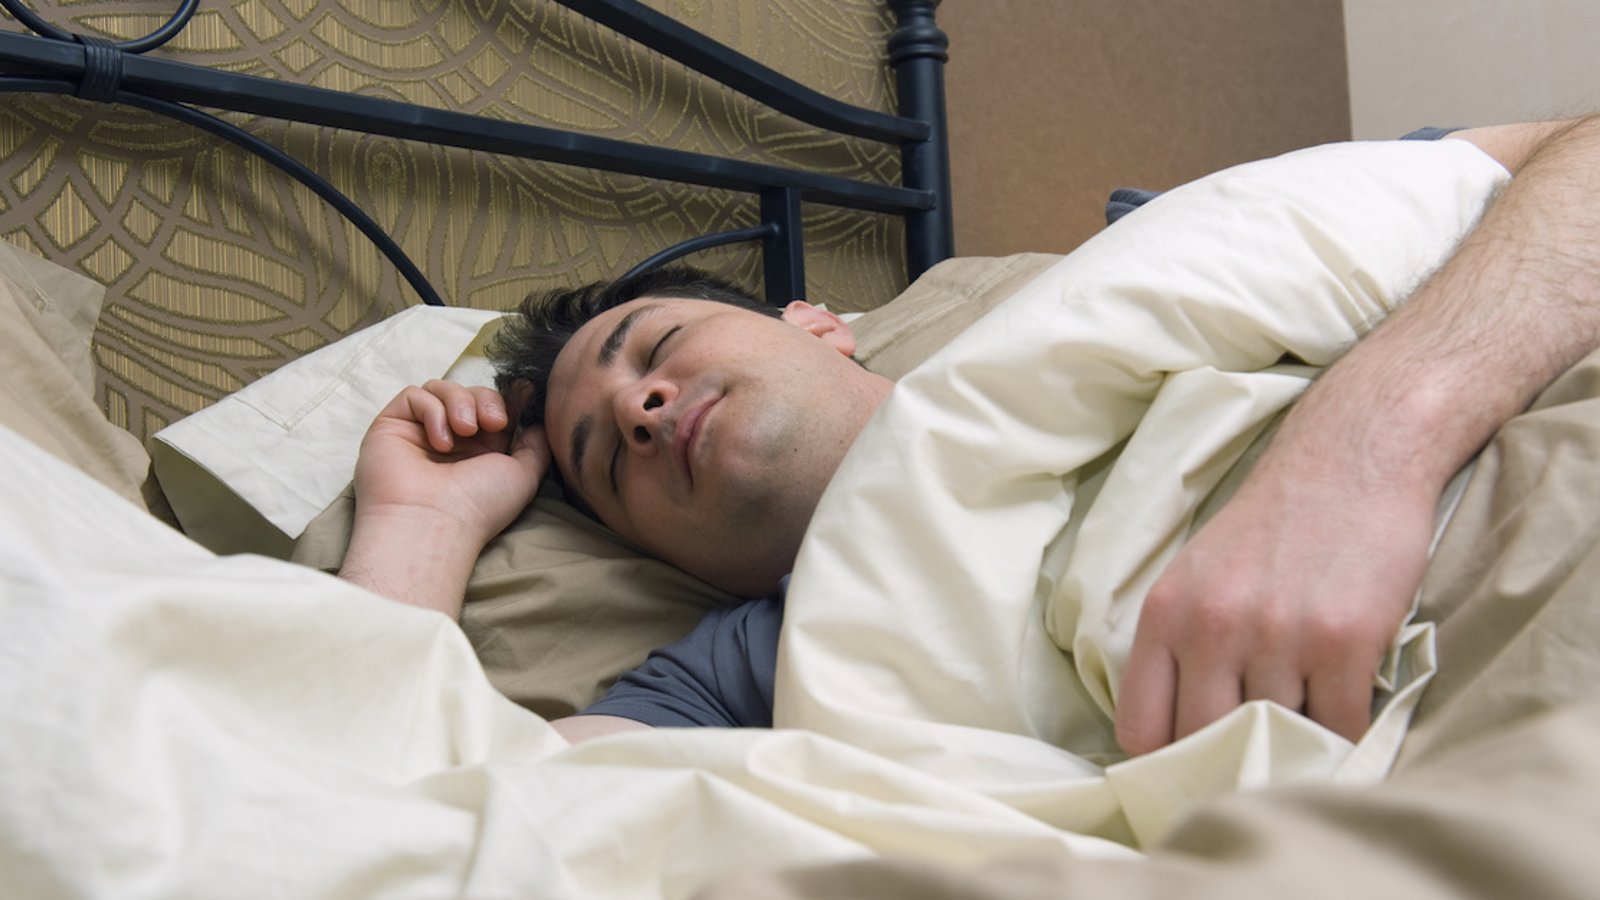 Une technique dite infaillible permettrait de s’endormir en quelques minutes